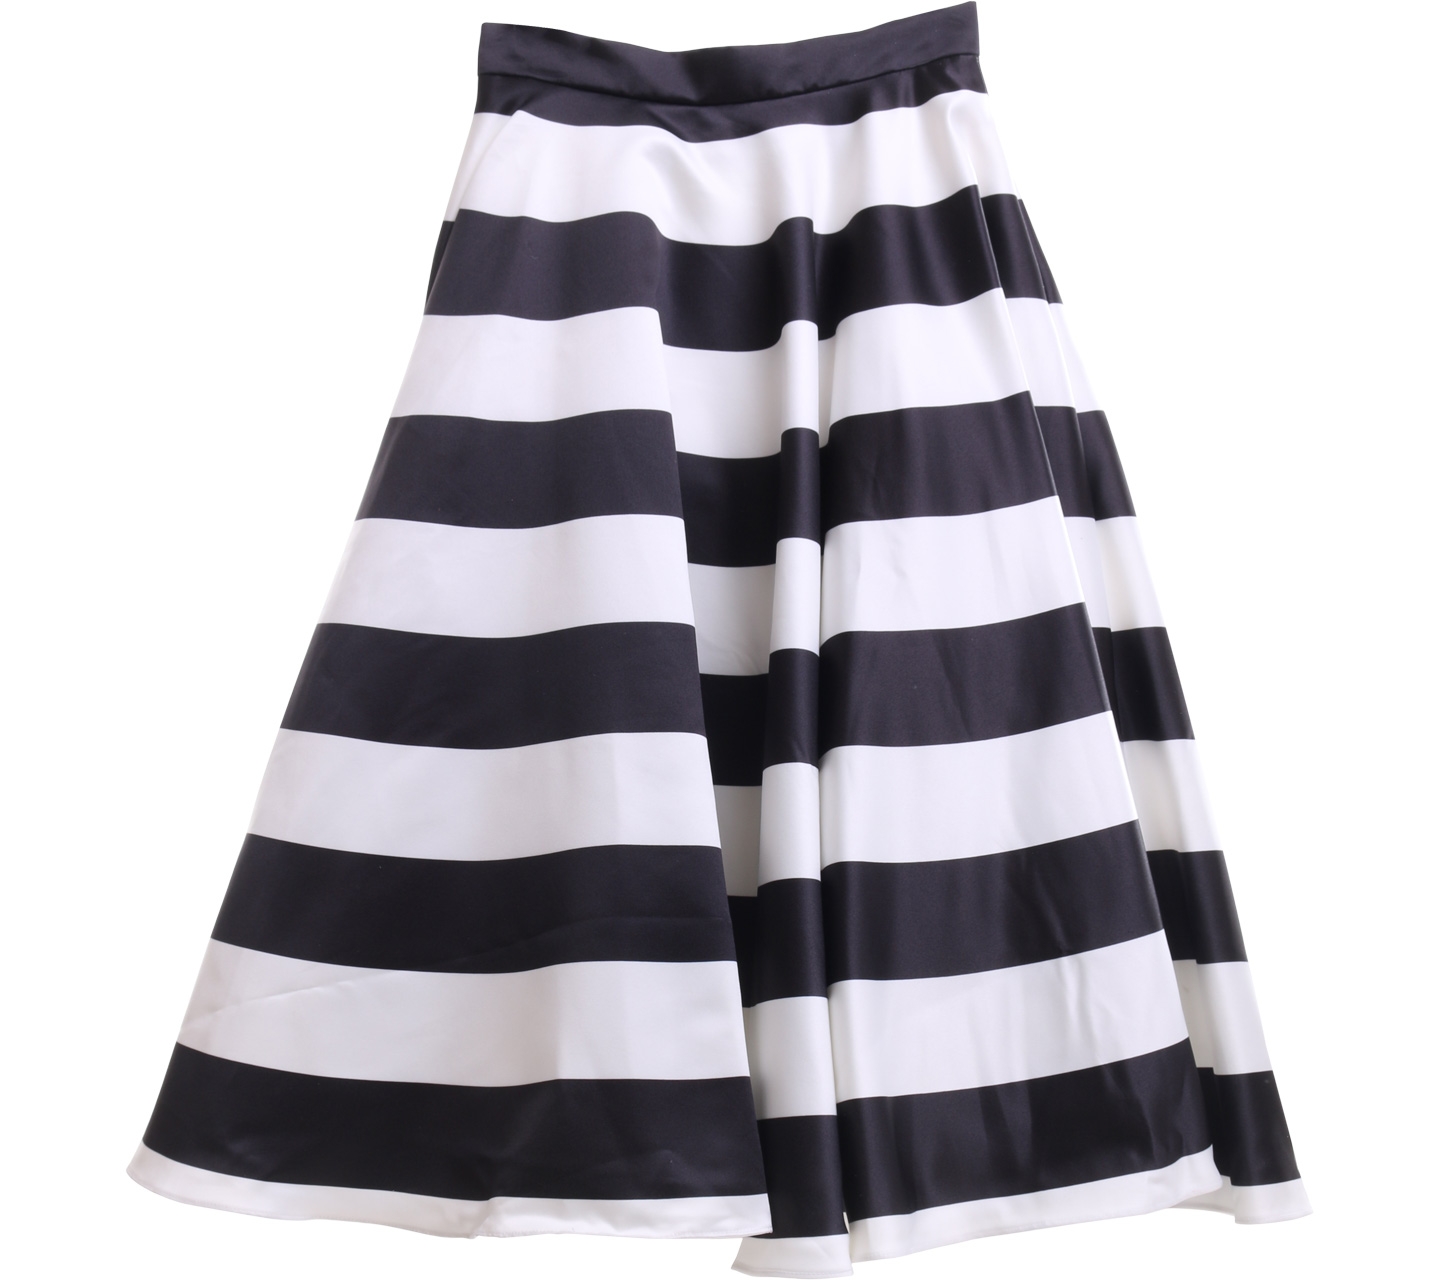 Bonschka Black And White Striped Midi Skirt